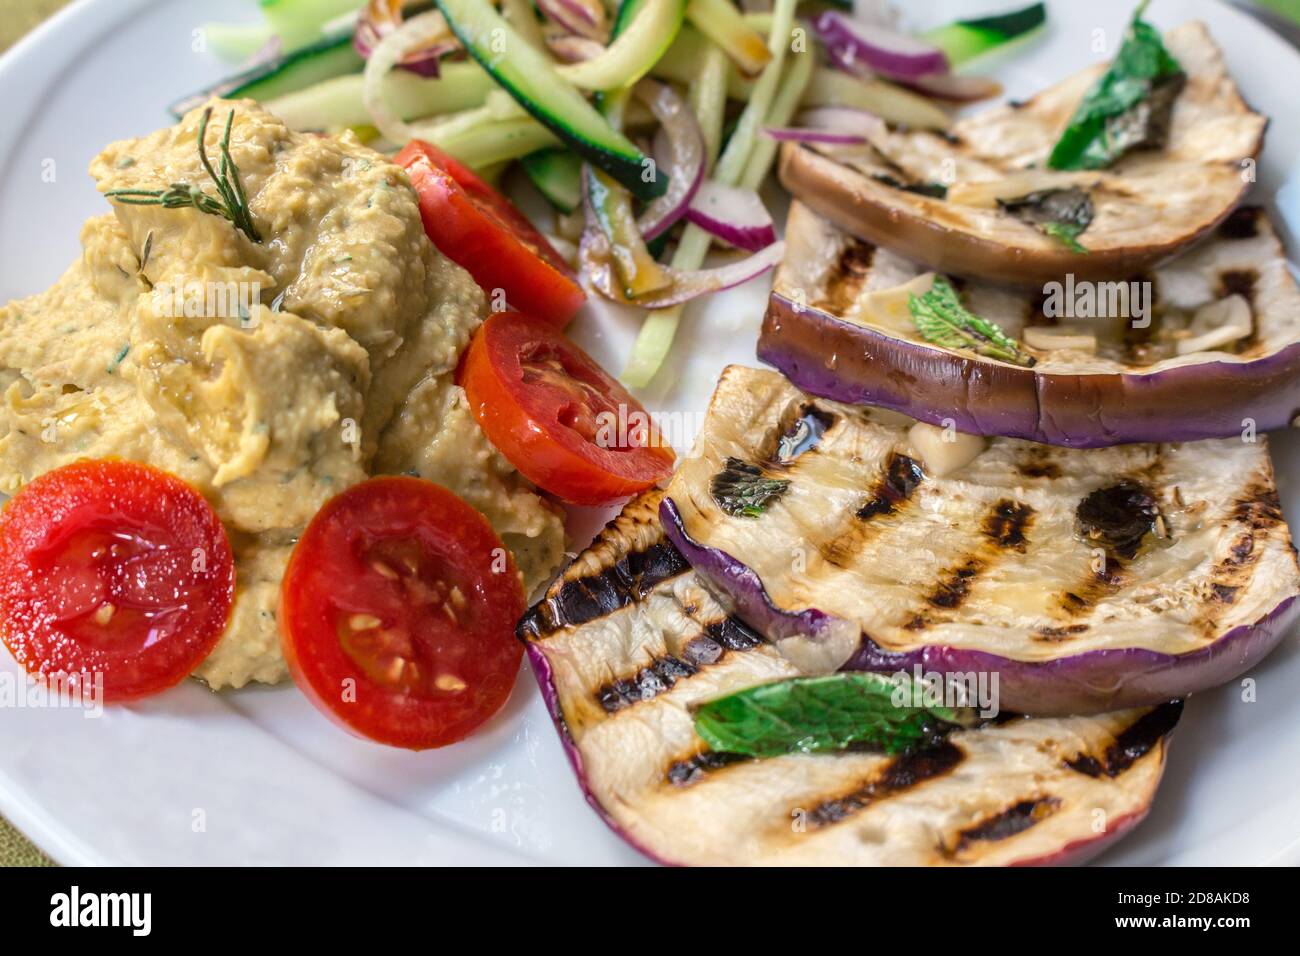 Ein veganes Gericht mit gegrillten tunesischen Auberginen, Kichererbsen-Hummus, Datterini-Tomaten und Julienne-Gurken und Zwiebeln Stockfoto